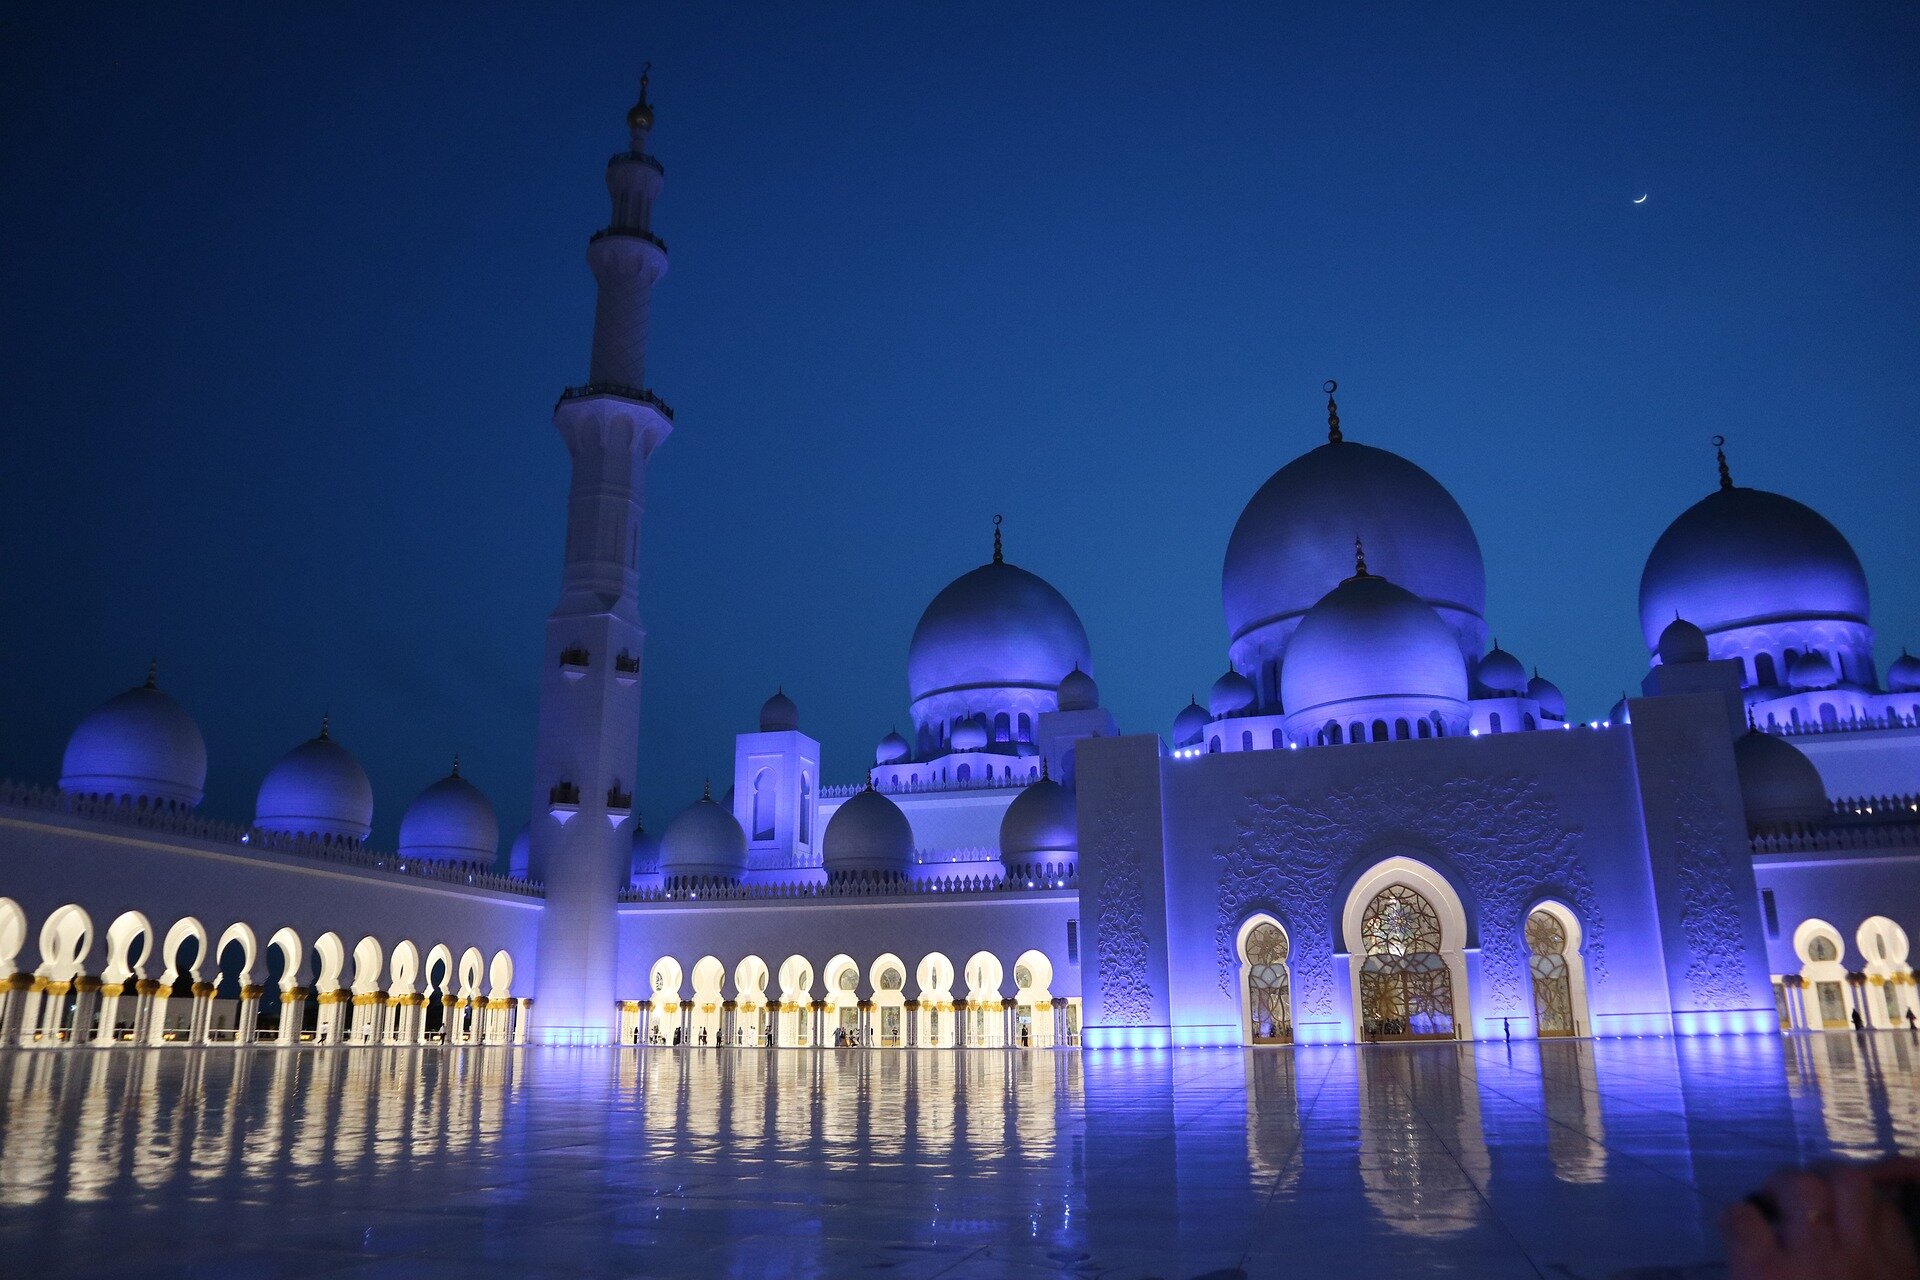 Zdjęcie przedstawia meczet w Abu Zabi w Zjednoczonych Emiratach Arabskich. Nocna fotografia przedstawia plac meczetu o błyszczącej powierzchni, w której odbija się budynek. Ma on białą fasadę, liczne kolumny połączone łukami, kopuły na dachu oraz strzelistą wieżę wznoszącą się wysoko ponad bryłę budynku. 